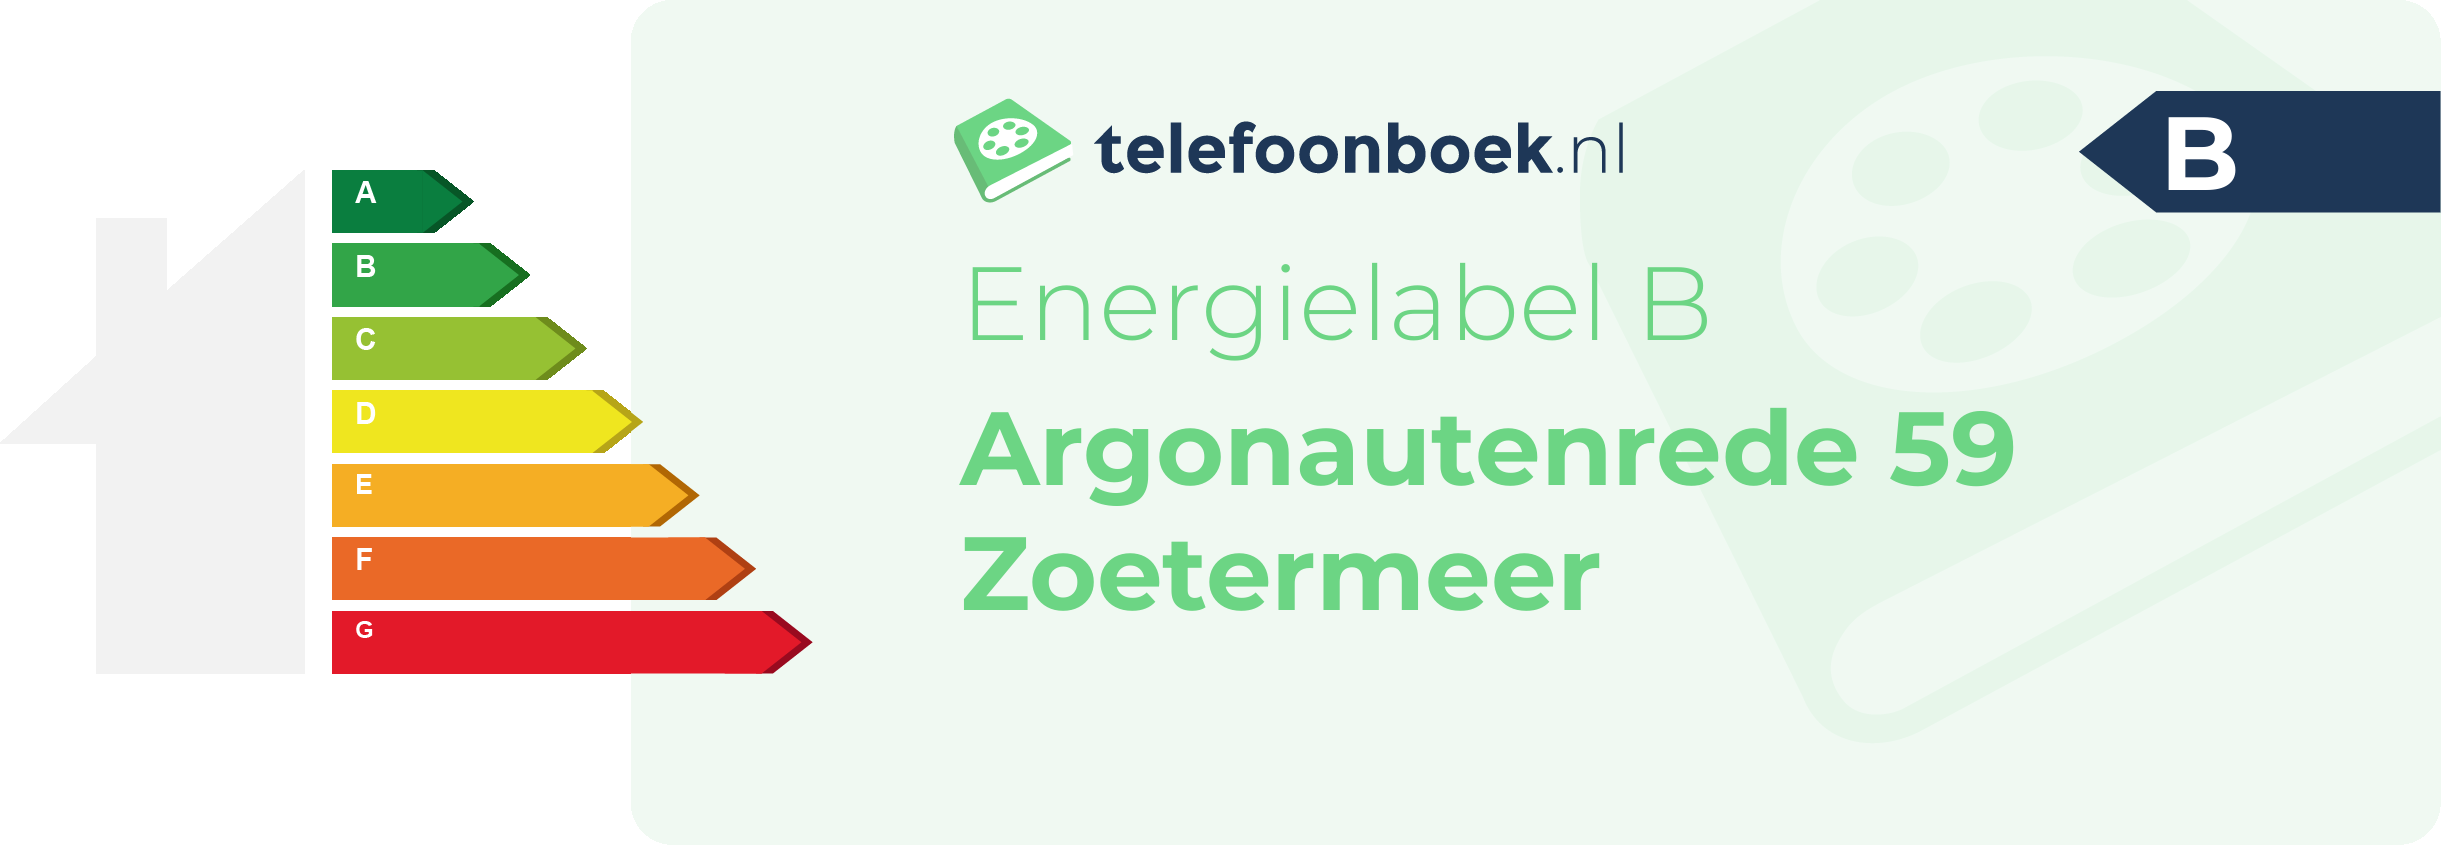 Energielabel Argonautenrede 59 Zoetermeer